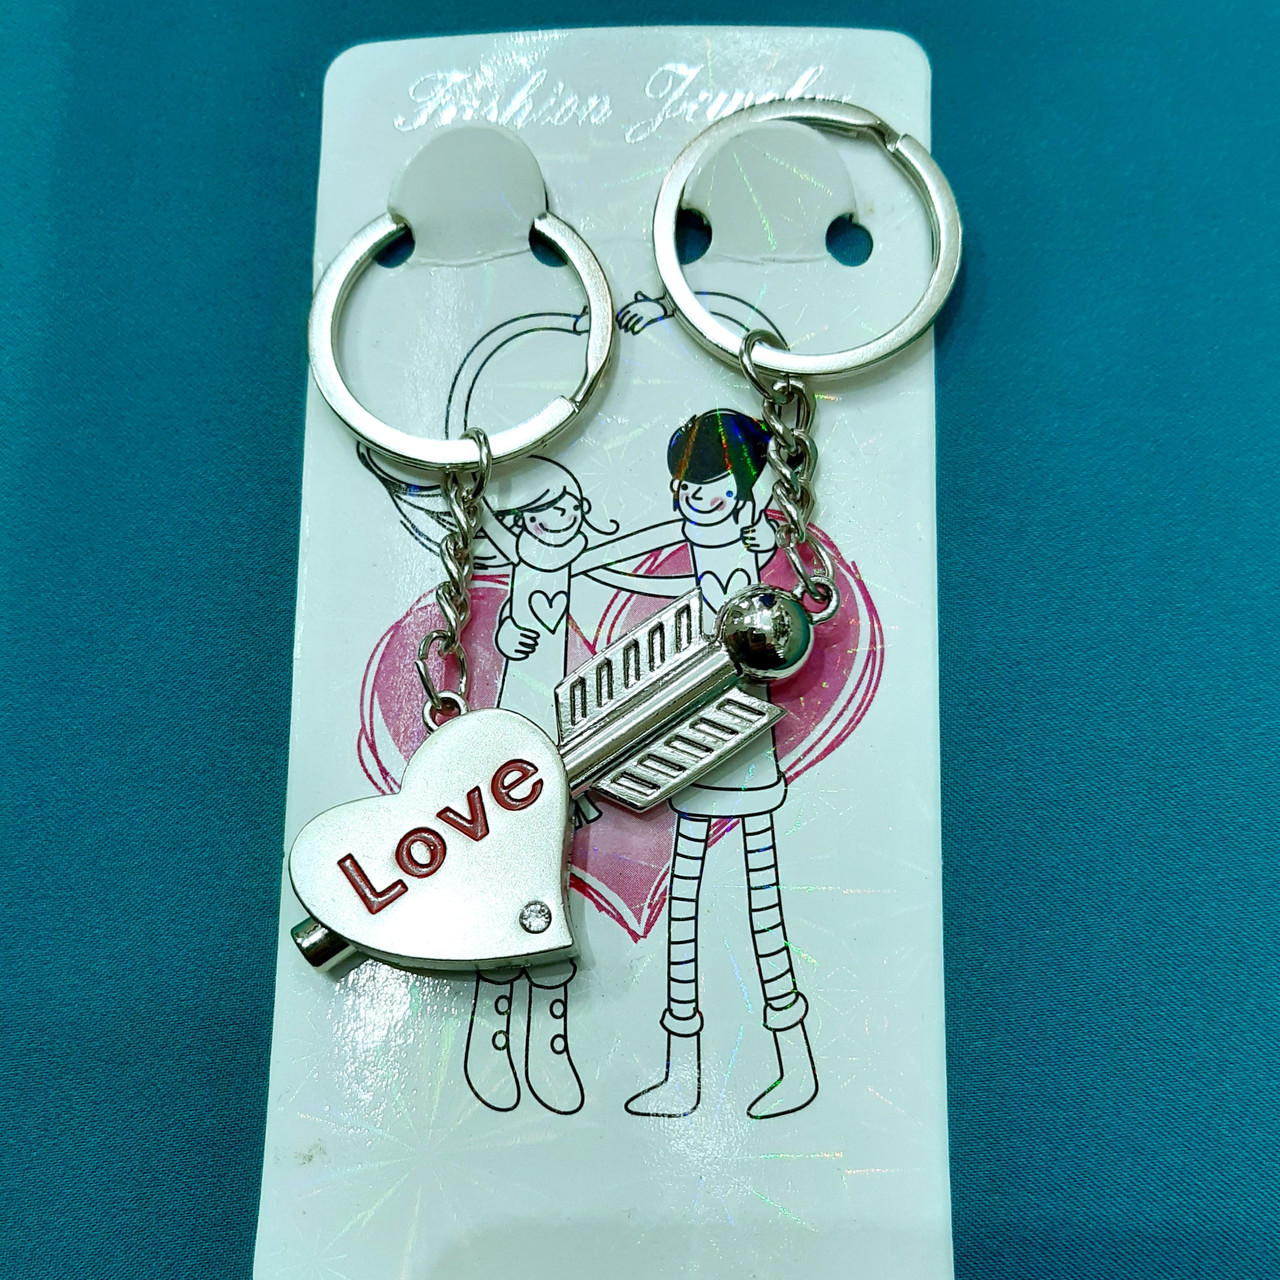 Парні брелки "Love" два в одному комплекті - оригінальний подарунок коханій дівчині дружині подрузі